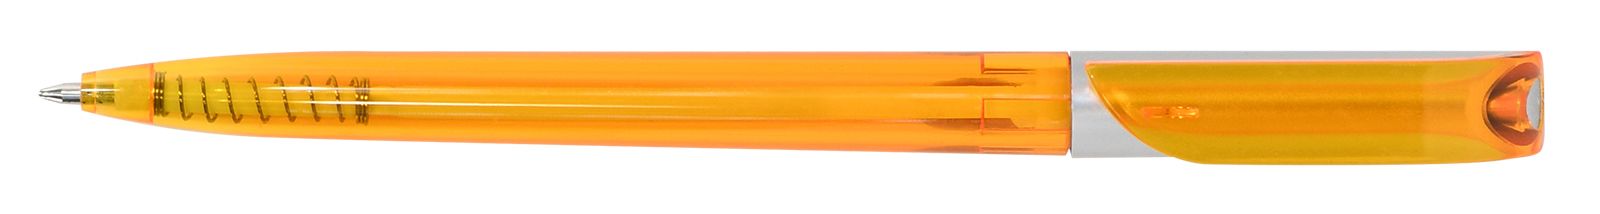 Ручка для логотипа шариковая автоматическая одноразовая INFORMAT КАРОЛИНА, 0,7 мм, синяя,  оранжевый тонированный корпус оптом